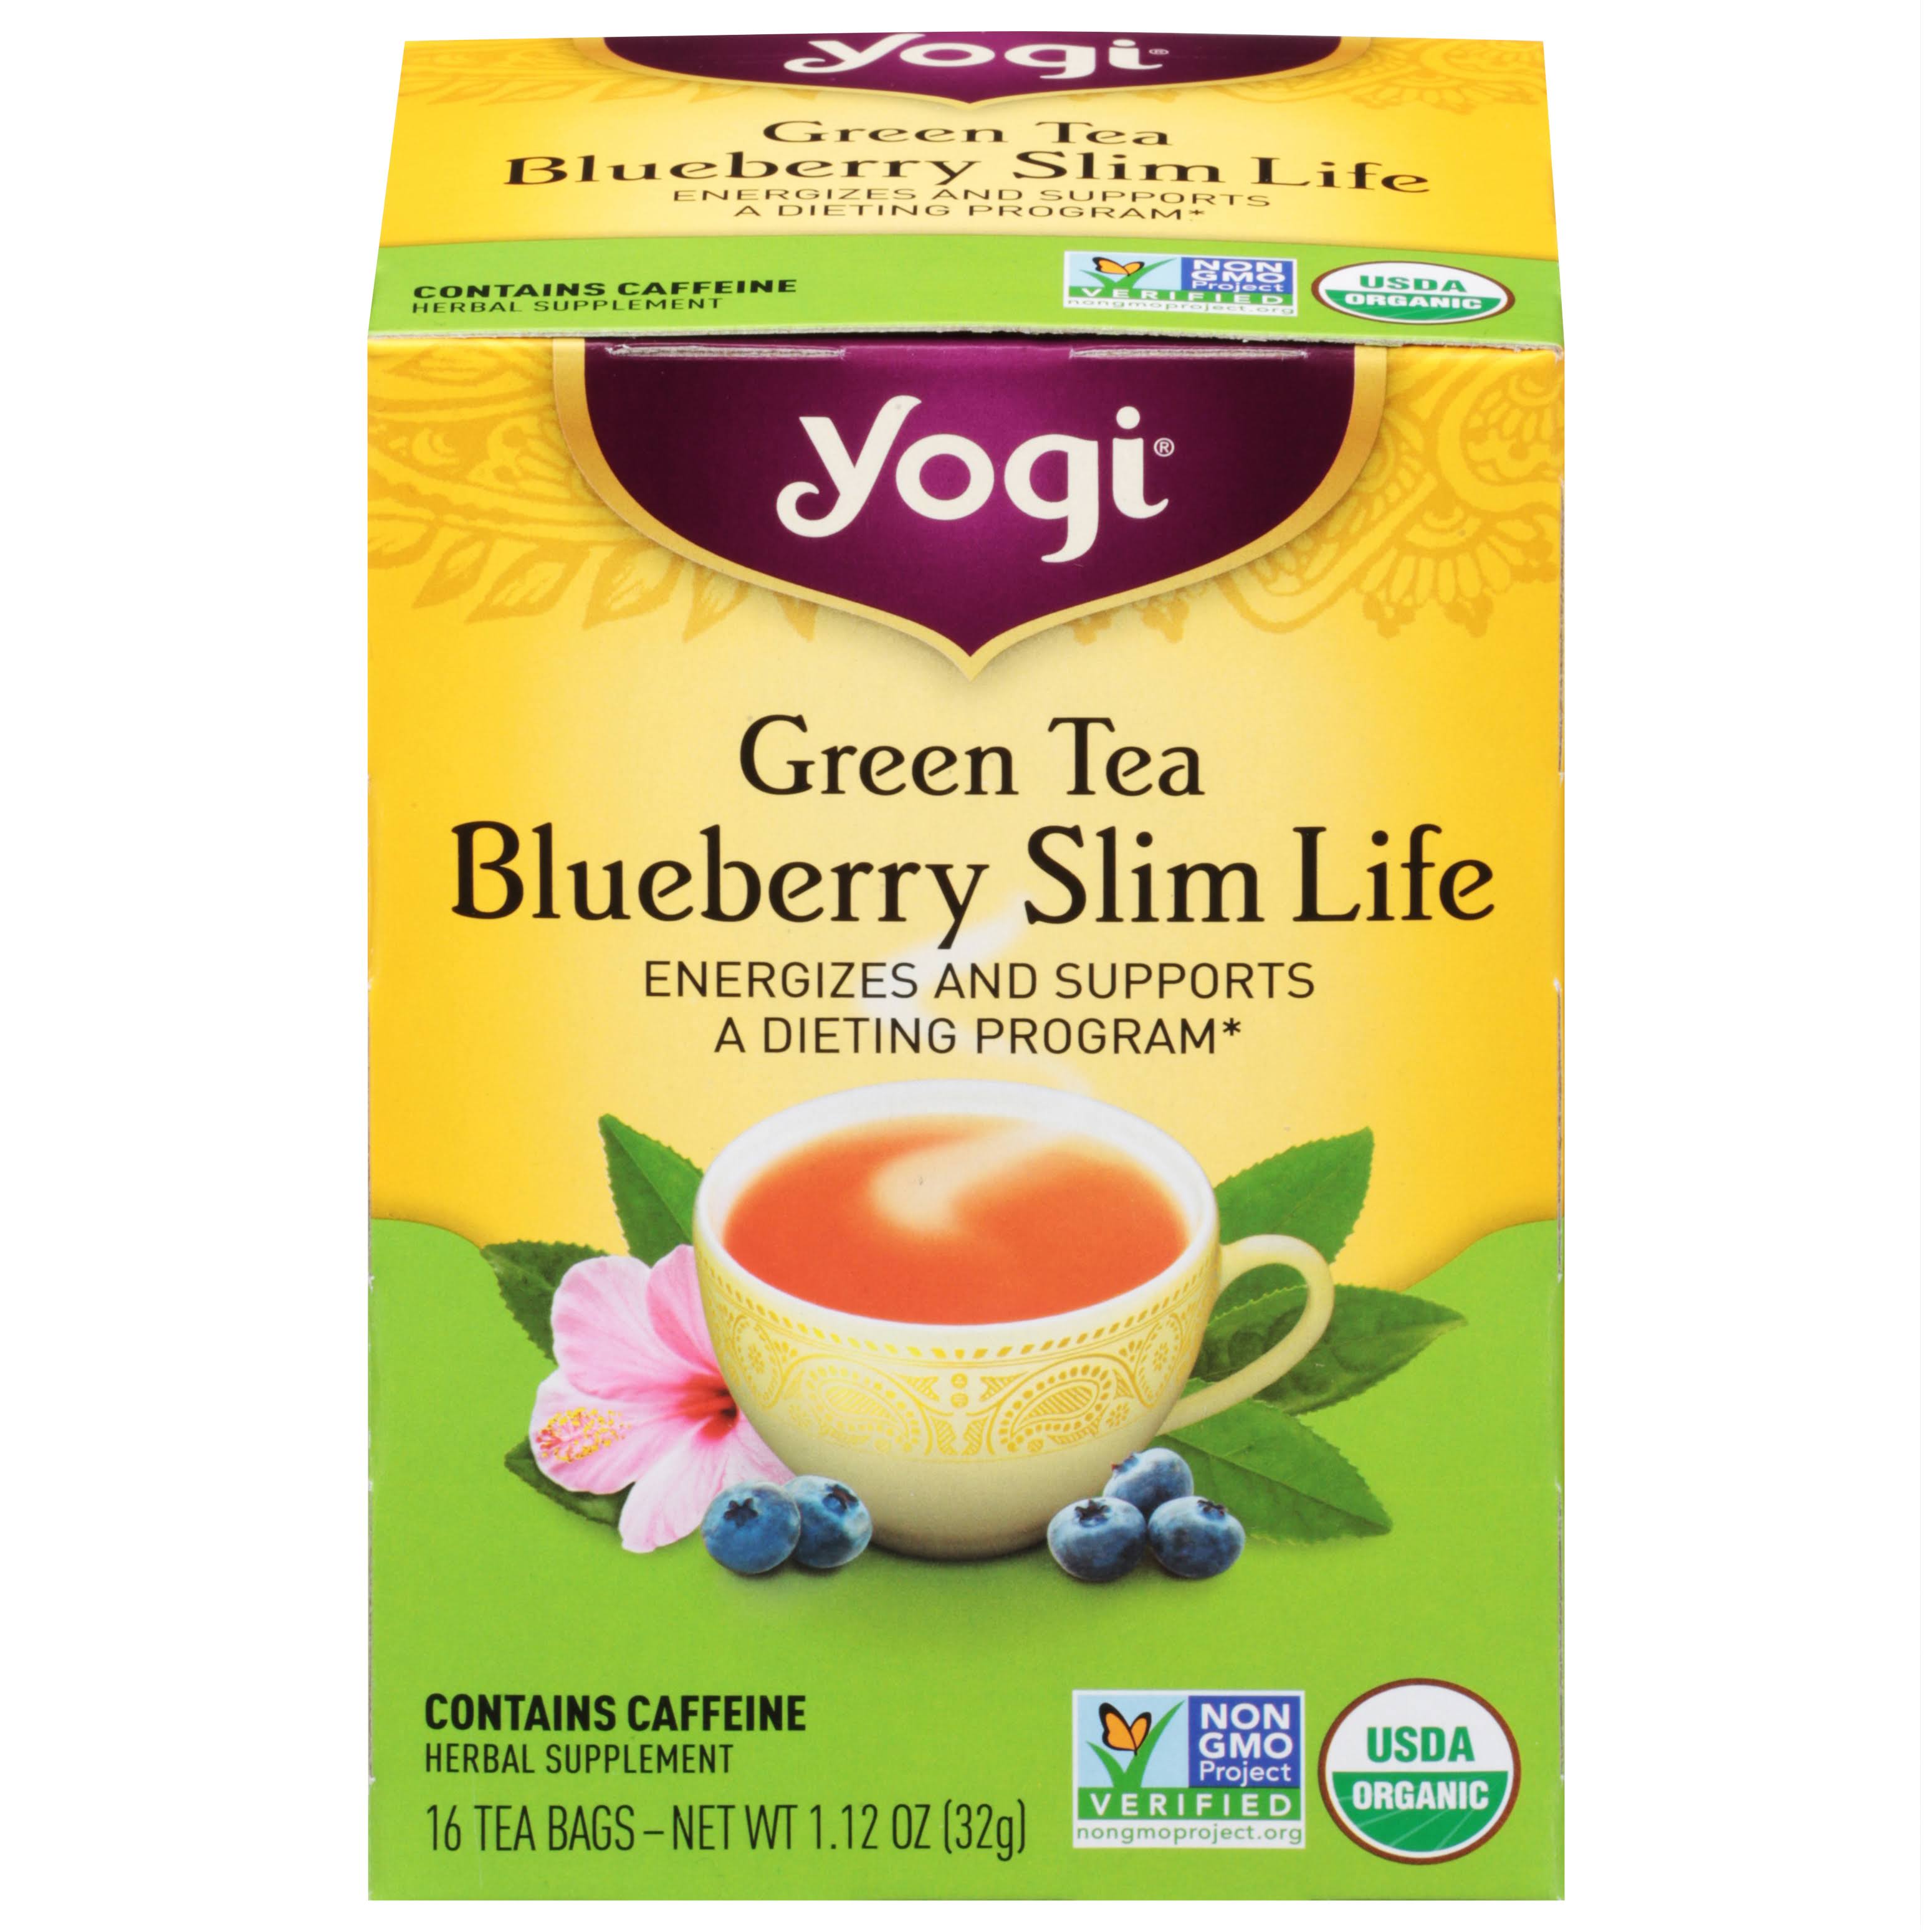 Yogi Blueberry Slim Life Green Tea - 16 Tea Bags